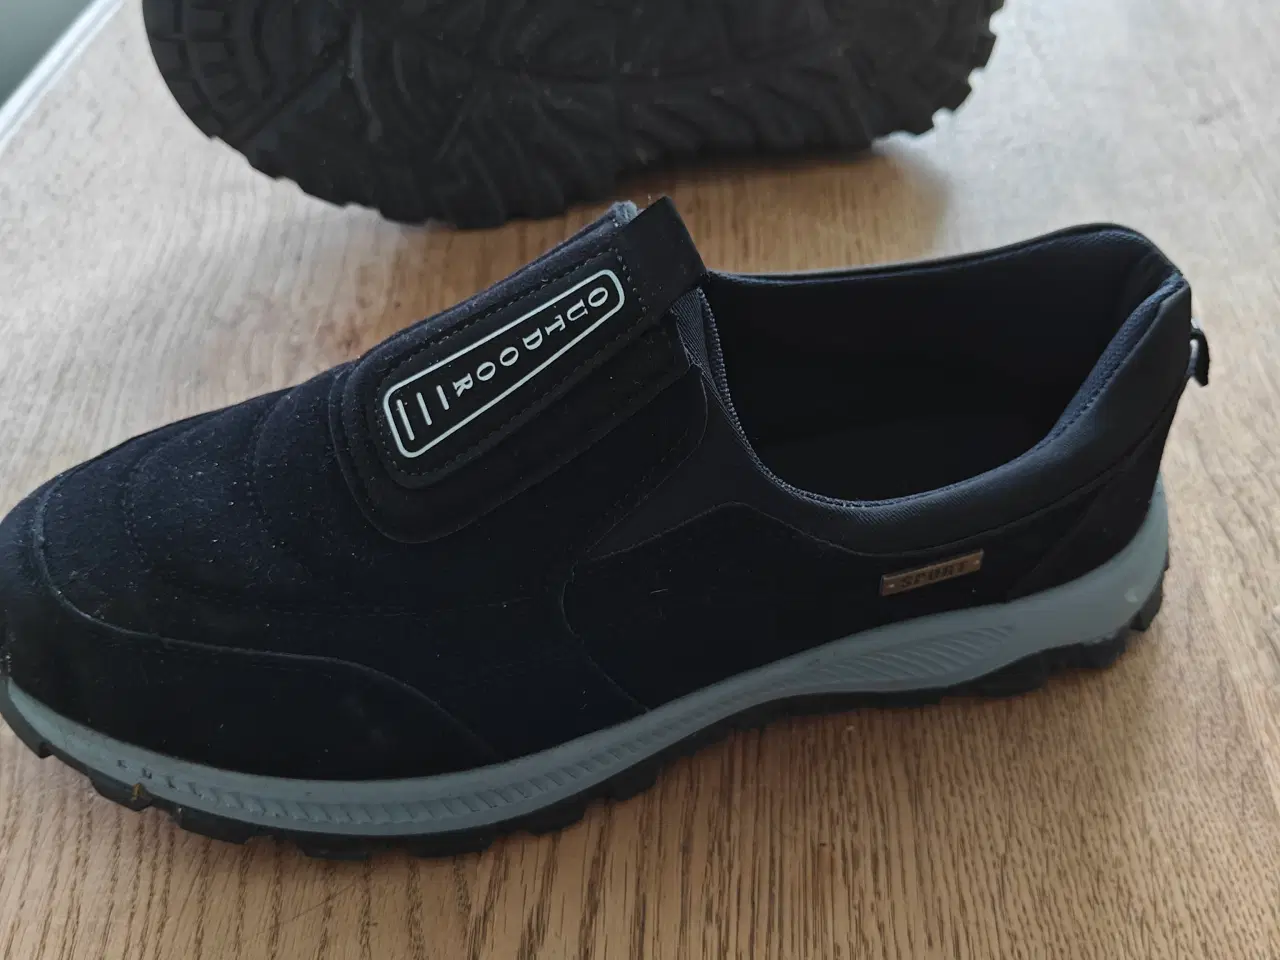 Billede 2 - nye sko uden snørrebånd